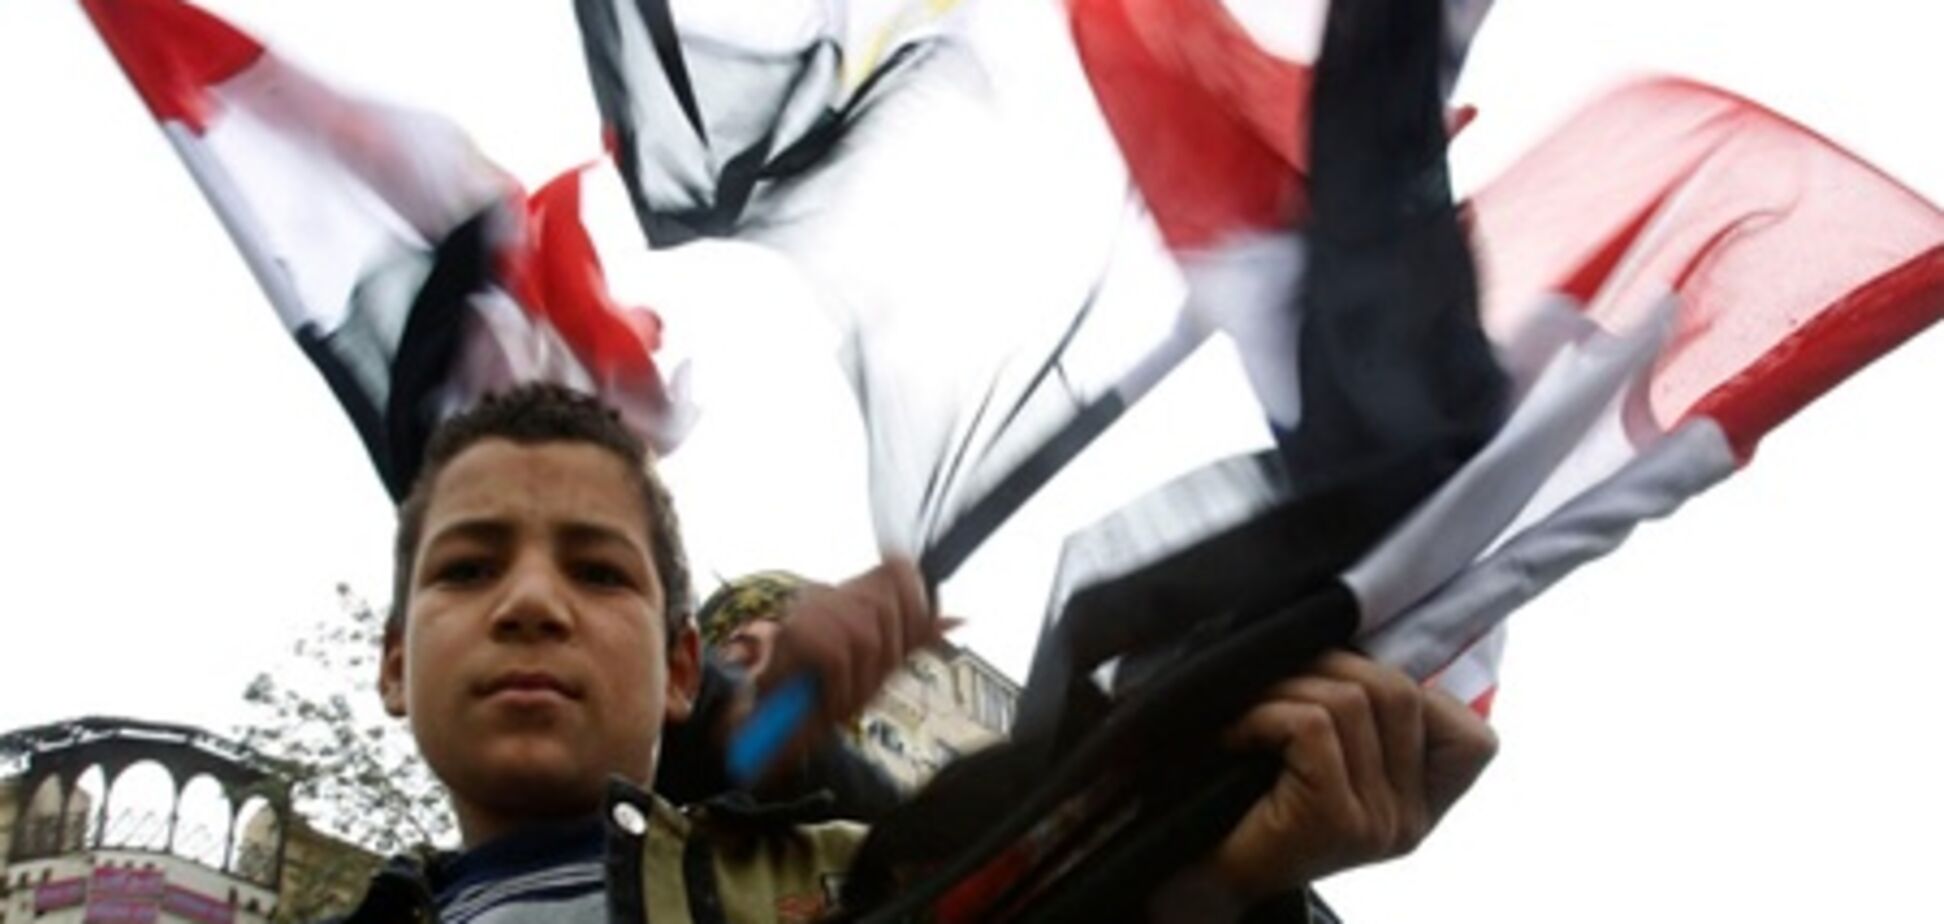 Єгипет: хроніка революції